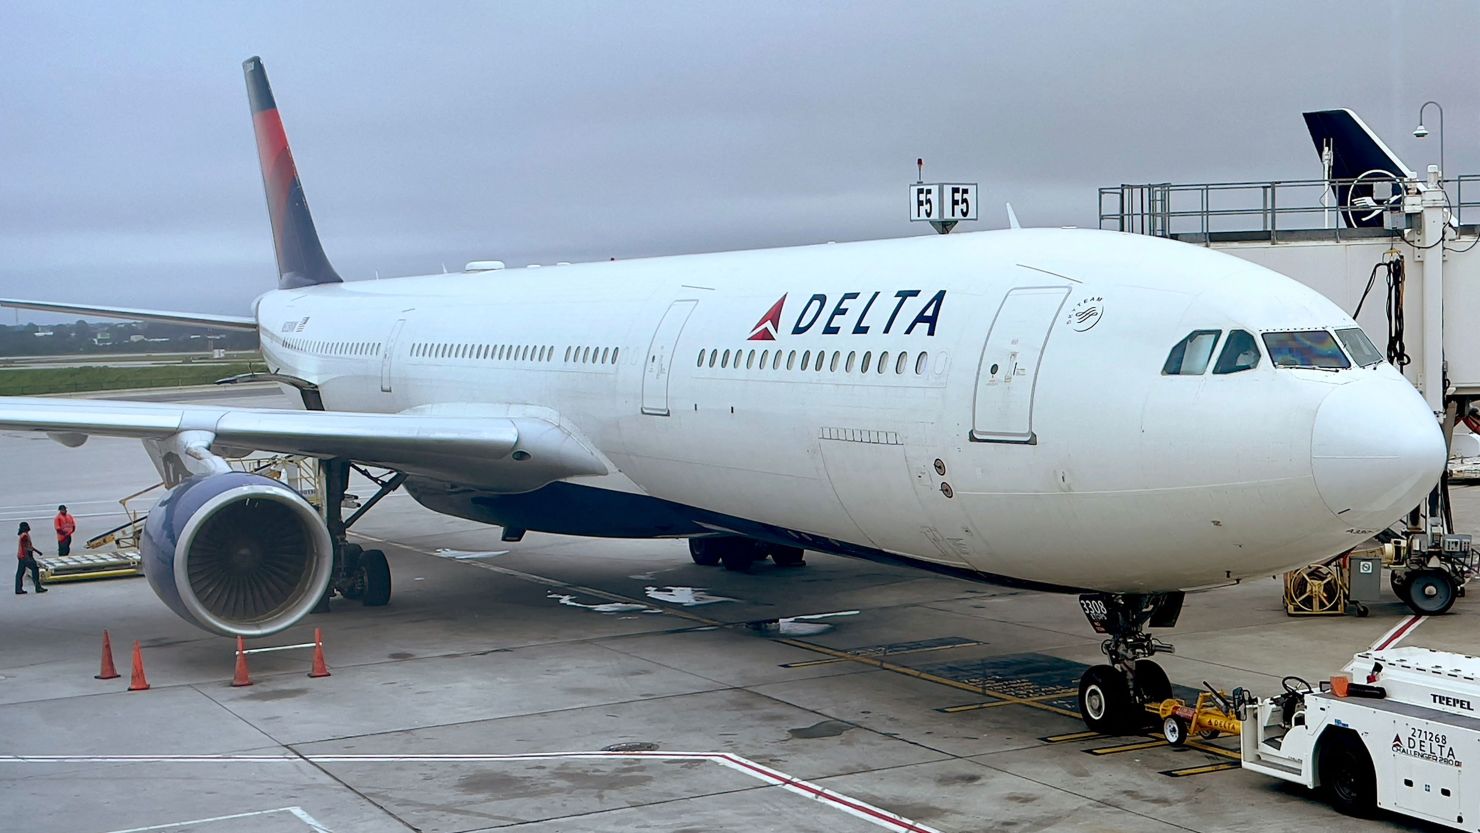 A Delta Air Lines plane at a gate at Hartsfield-Jackson Atlanta International Airport in Atlanta.